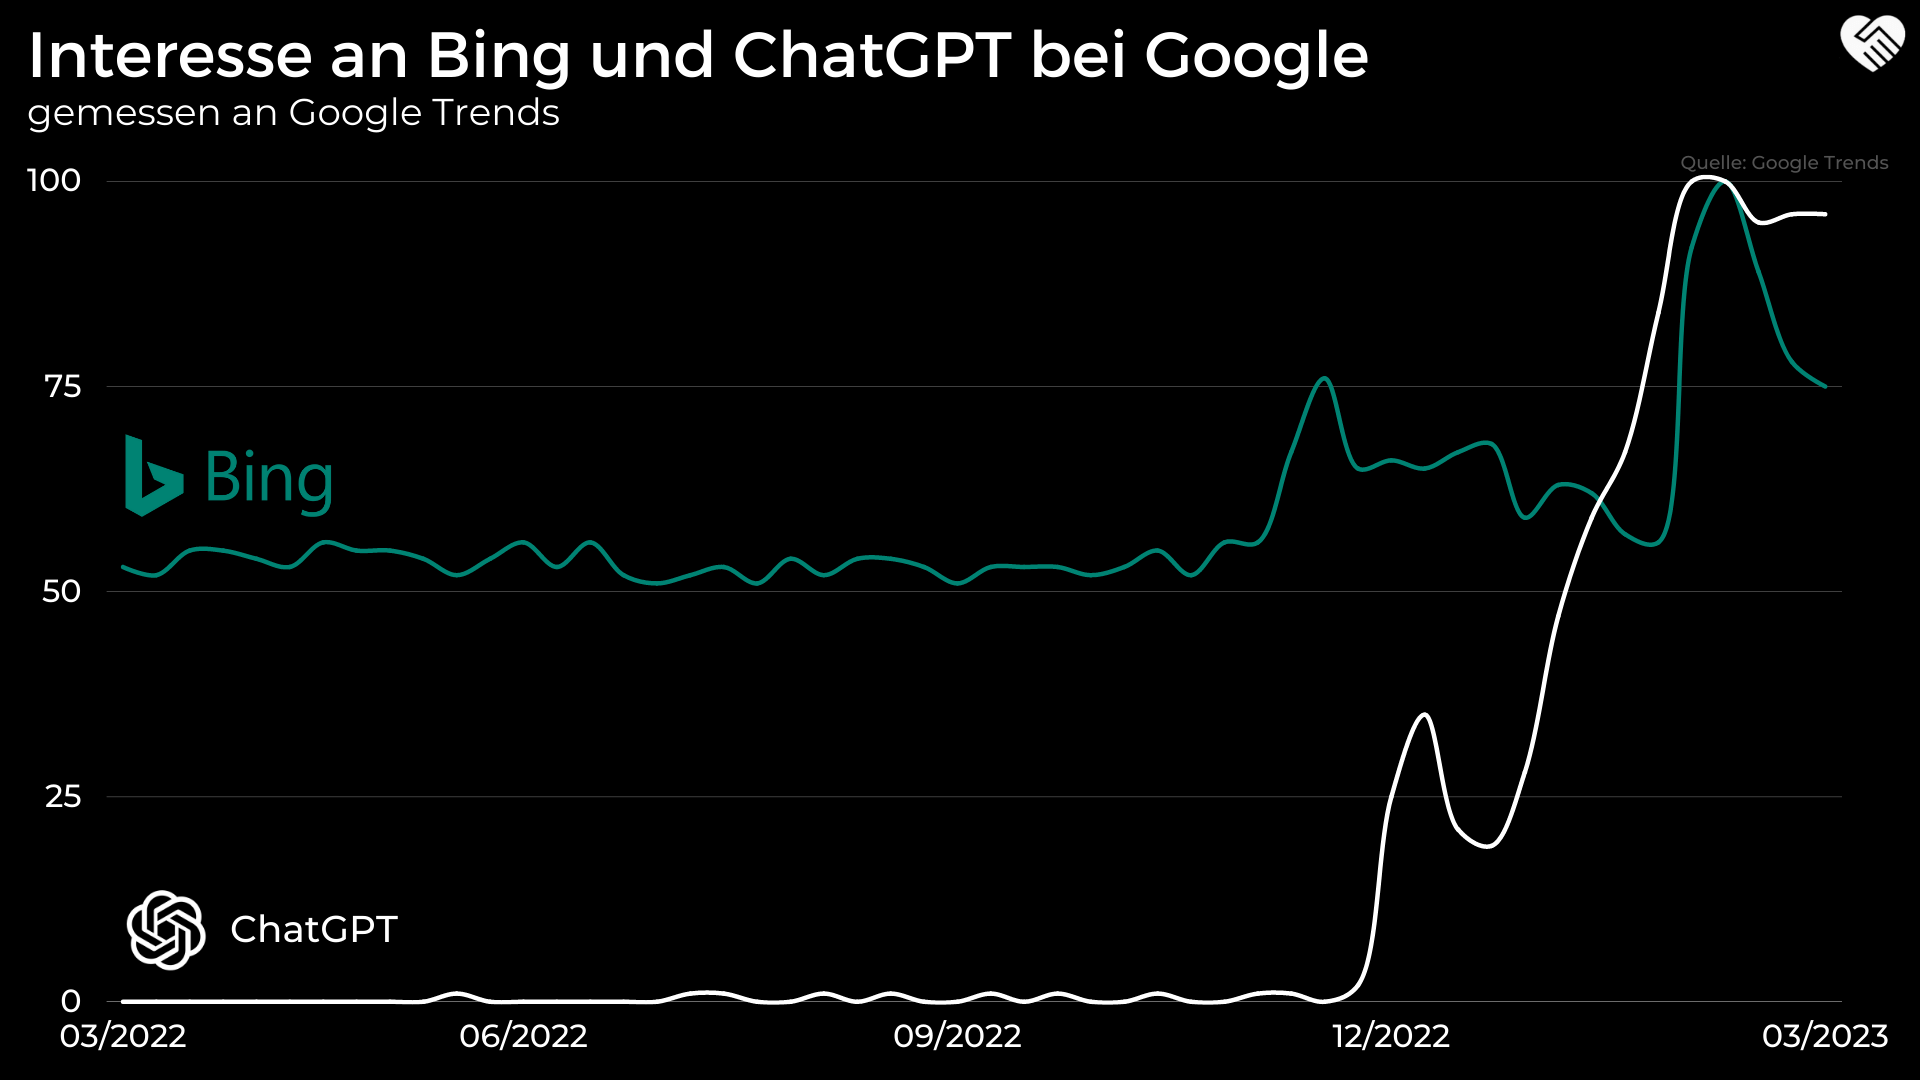 Ist die Google Aktie durch ChatGPT in Gefahr?